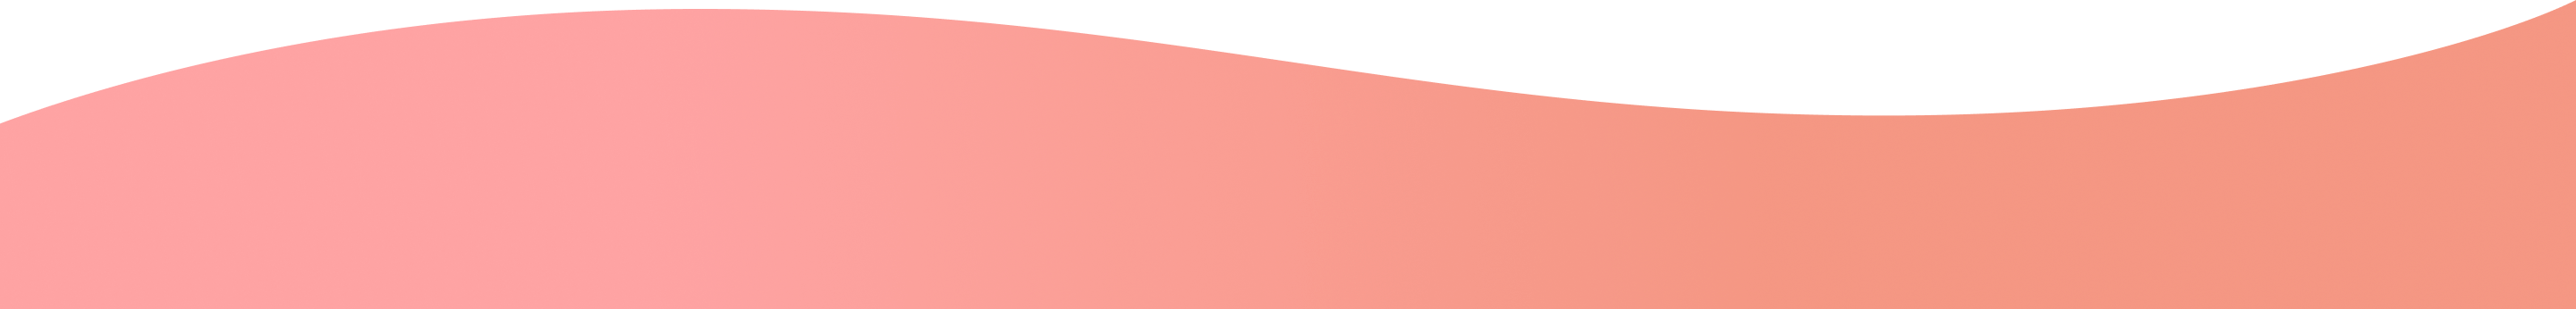 ピンク色の波